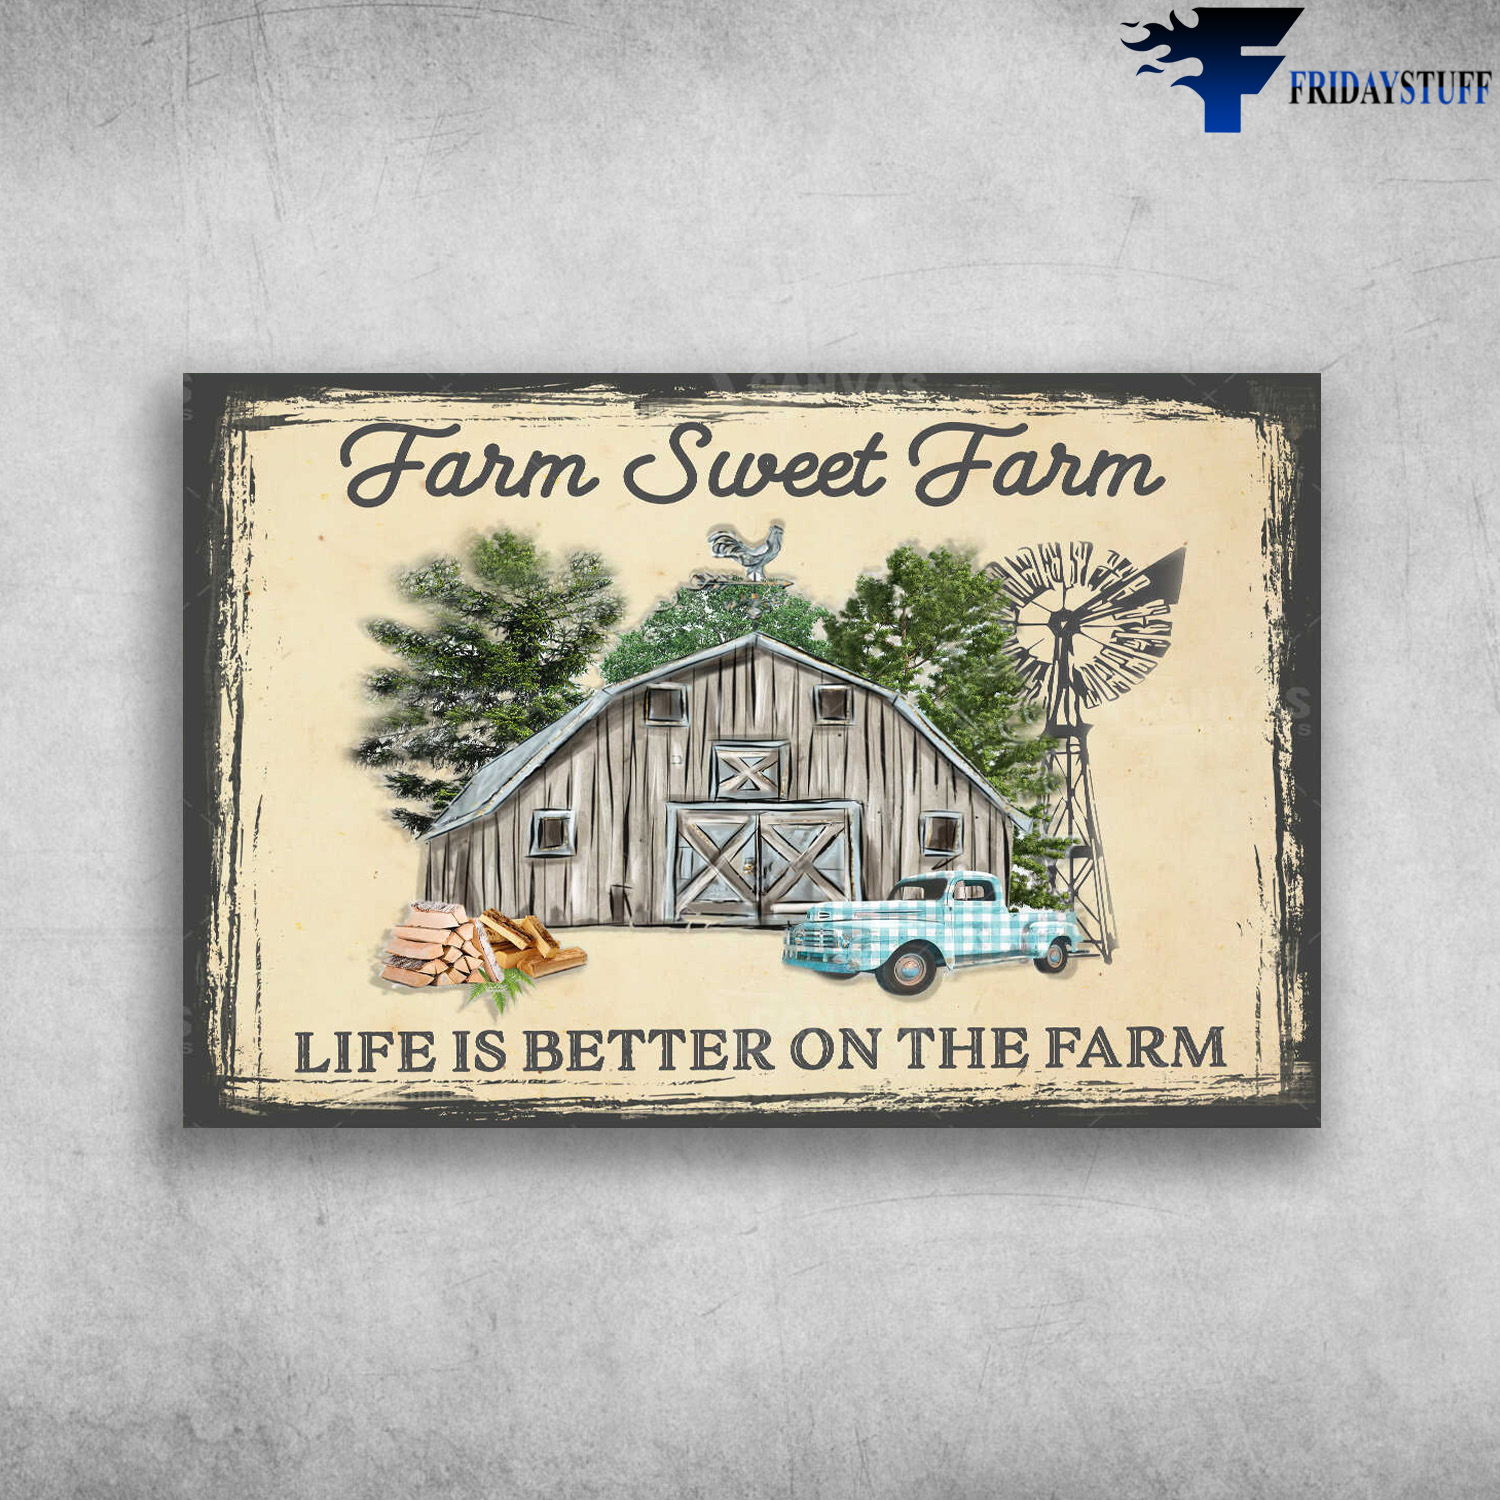 Farmhouse And Truck - Farm Sweet Farm, Life Is Better On The Farm